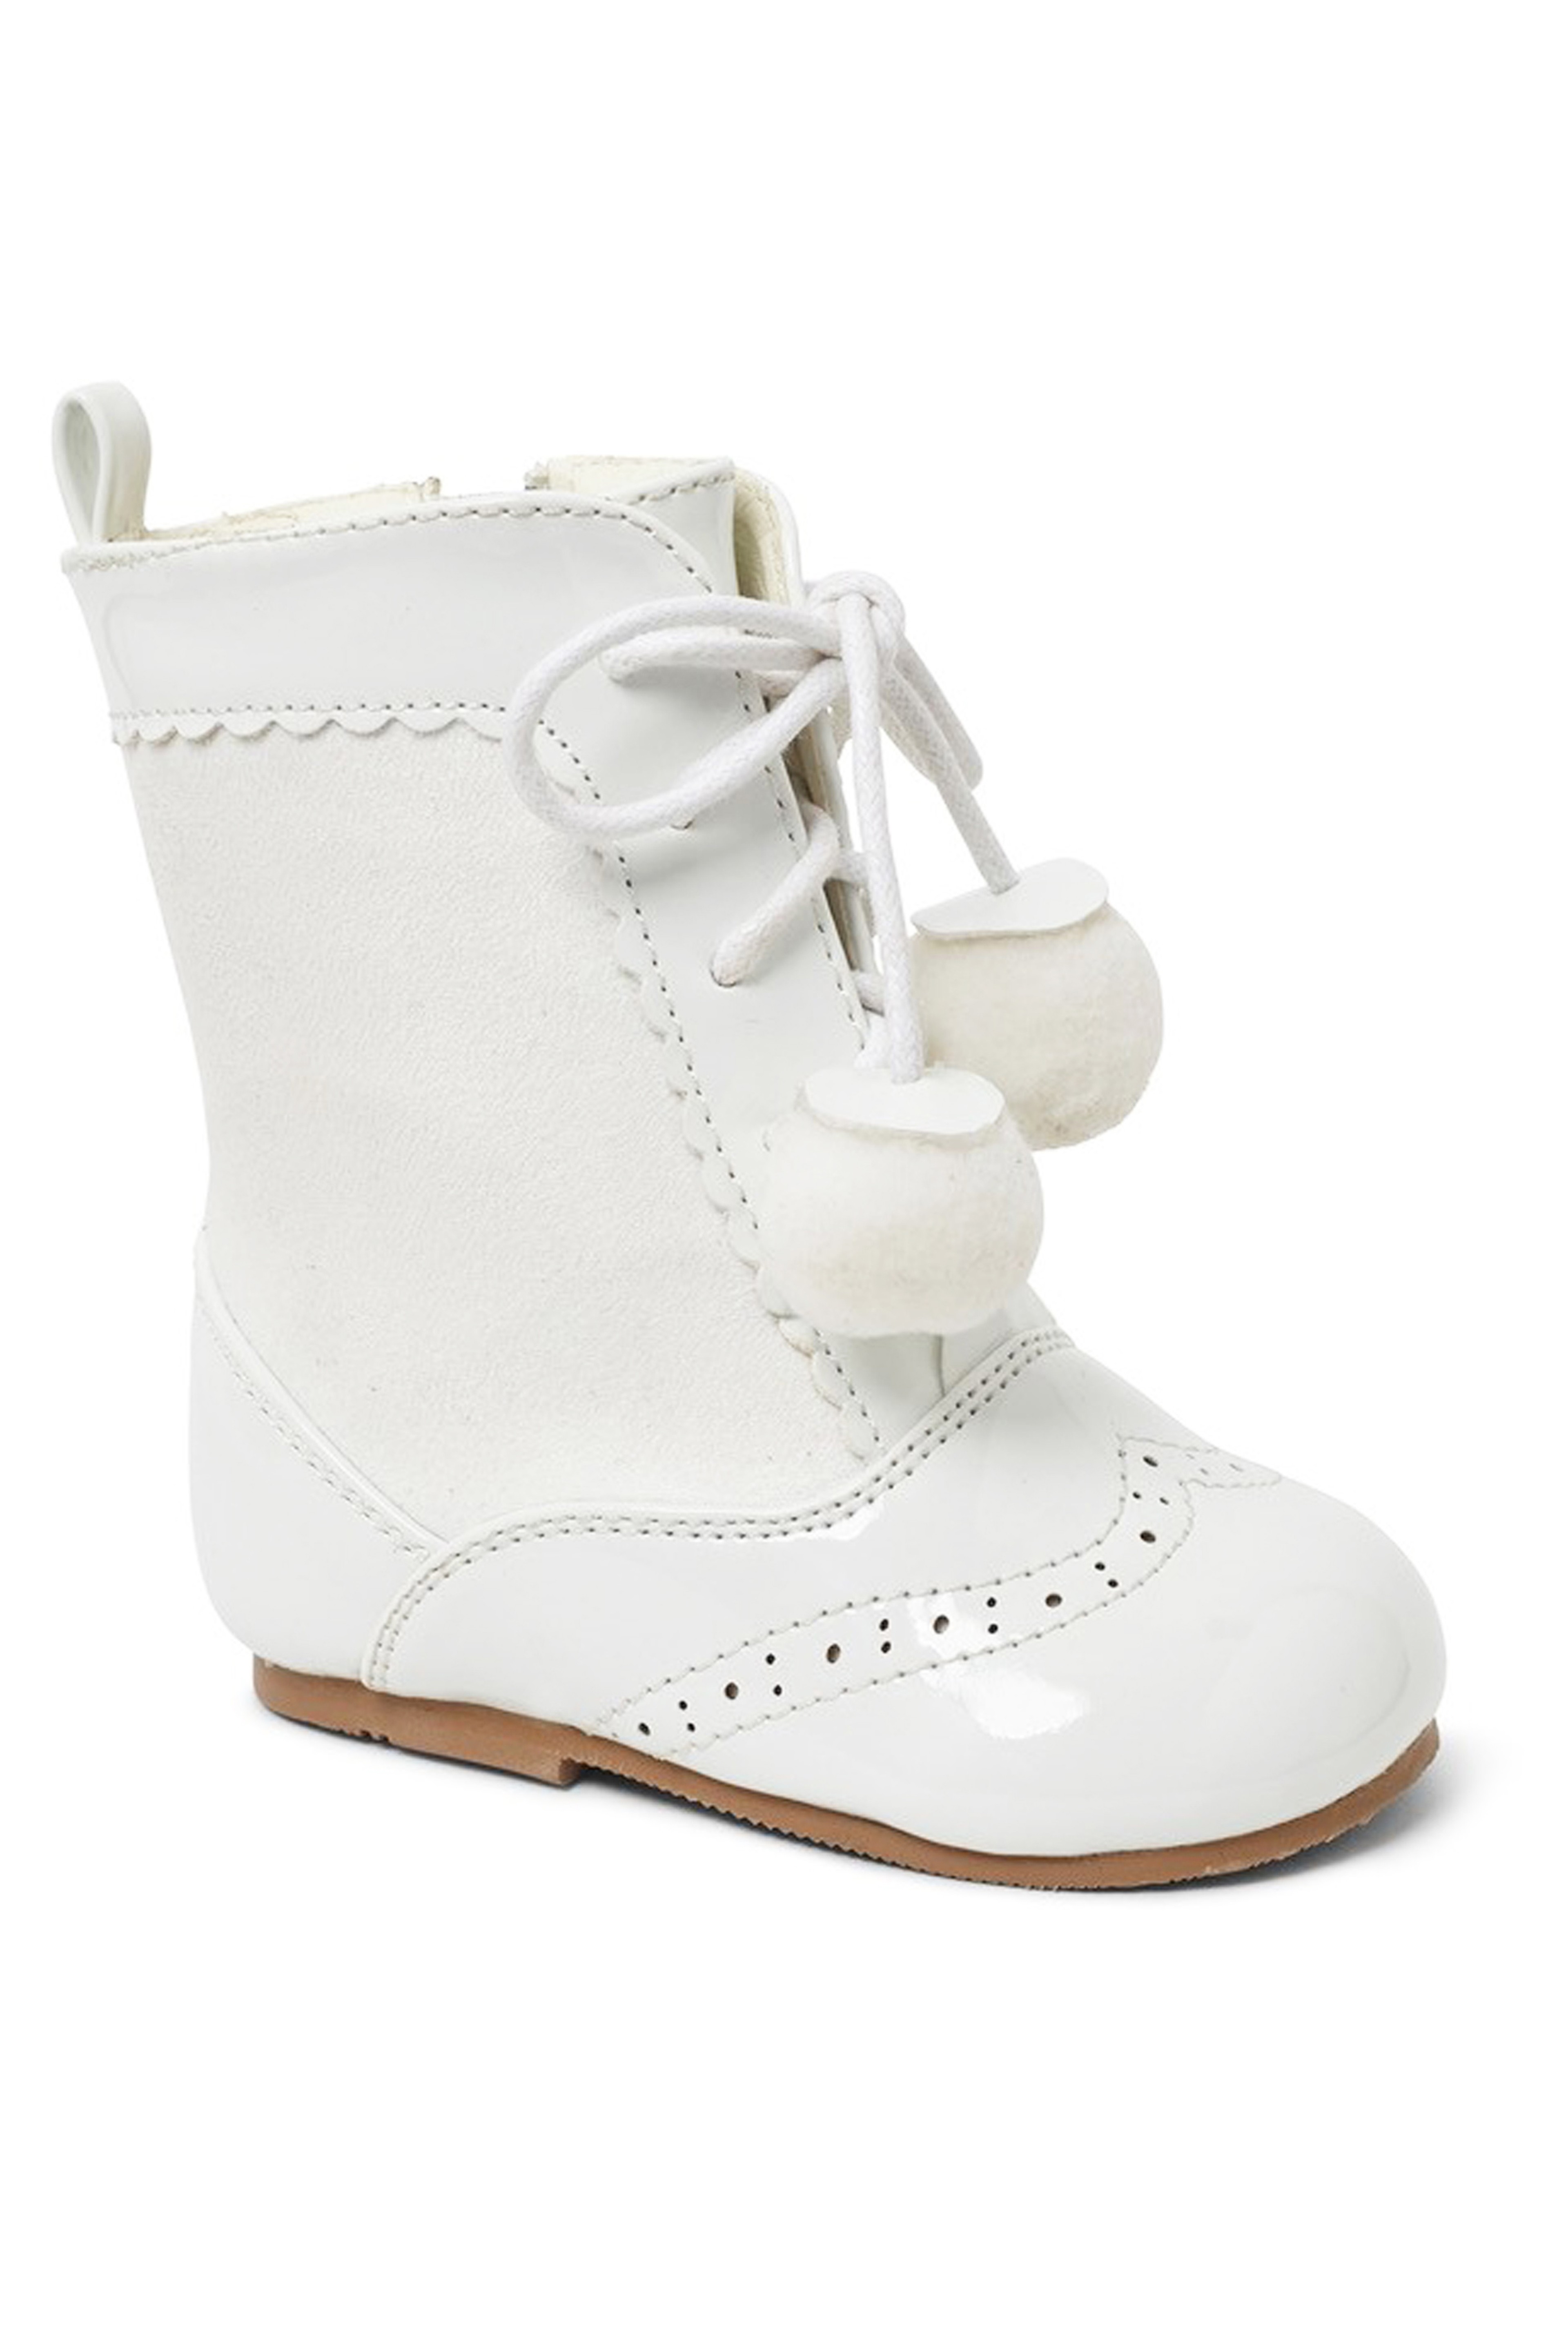 Kinder Lackleder Sienna Brogue Stiefel mit Schnürung und Pom-Pom Details, Unisex Klassische Schuhe - Weiß